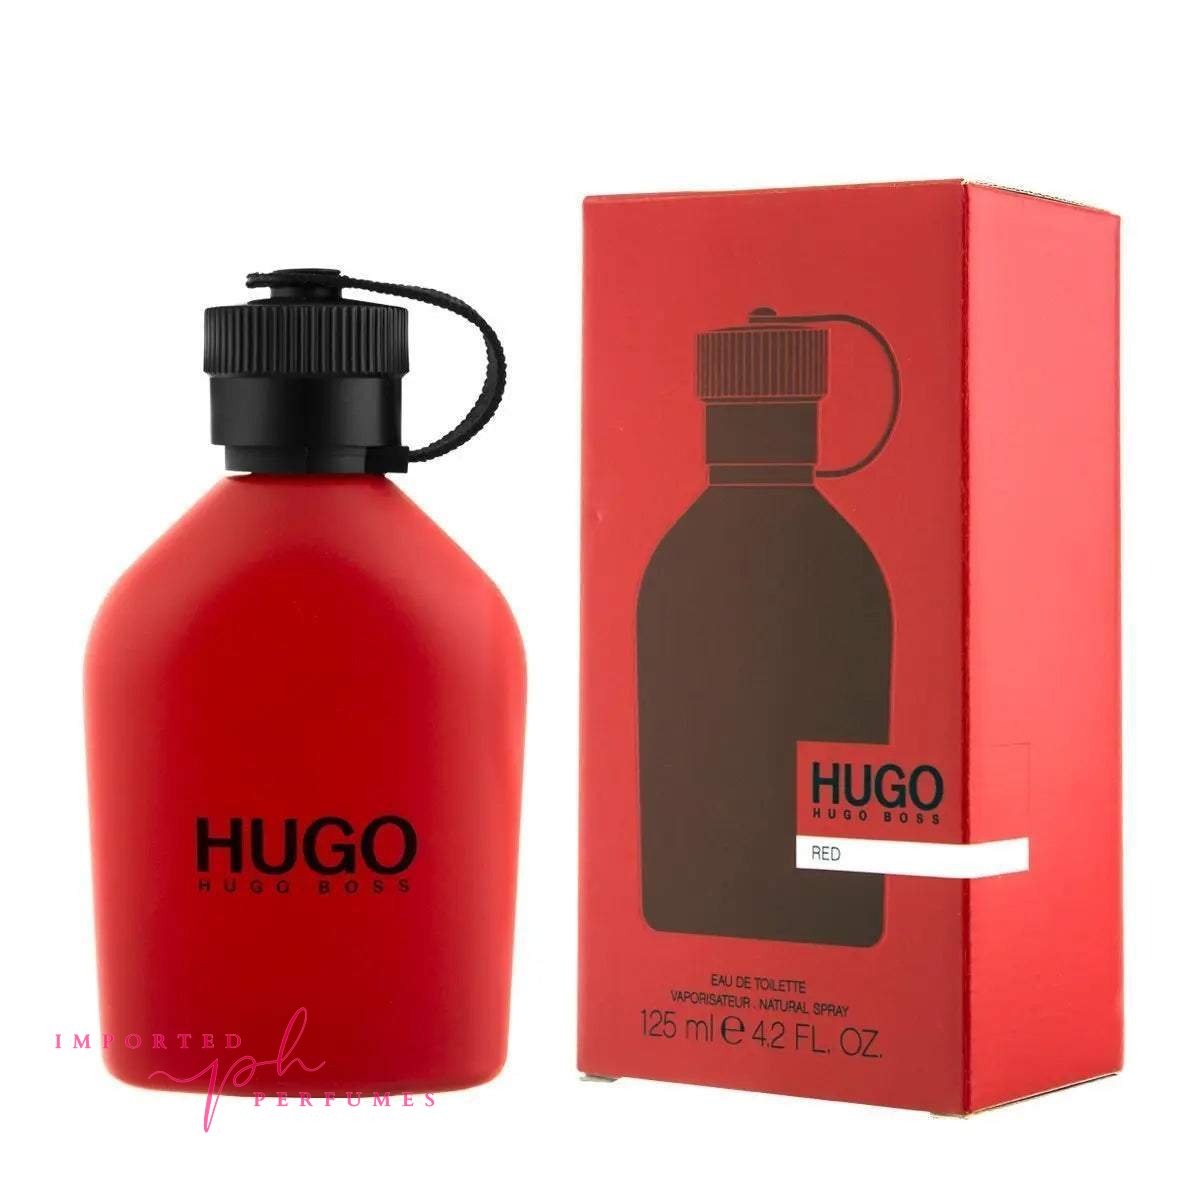 Hugo Boss Hugo Red Men EAU DE TOILETTE 150 ML-Imported Perfumes Co-150ml,Hugo Boss,hugo ice,Hugo perfume,Hugo red,men,red